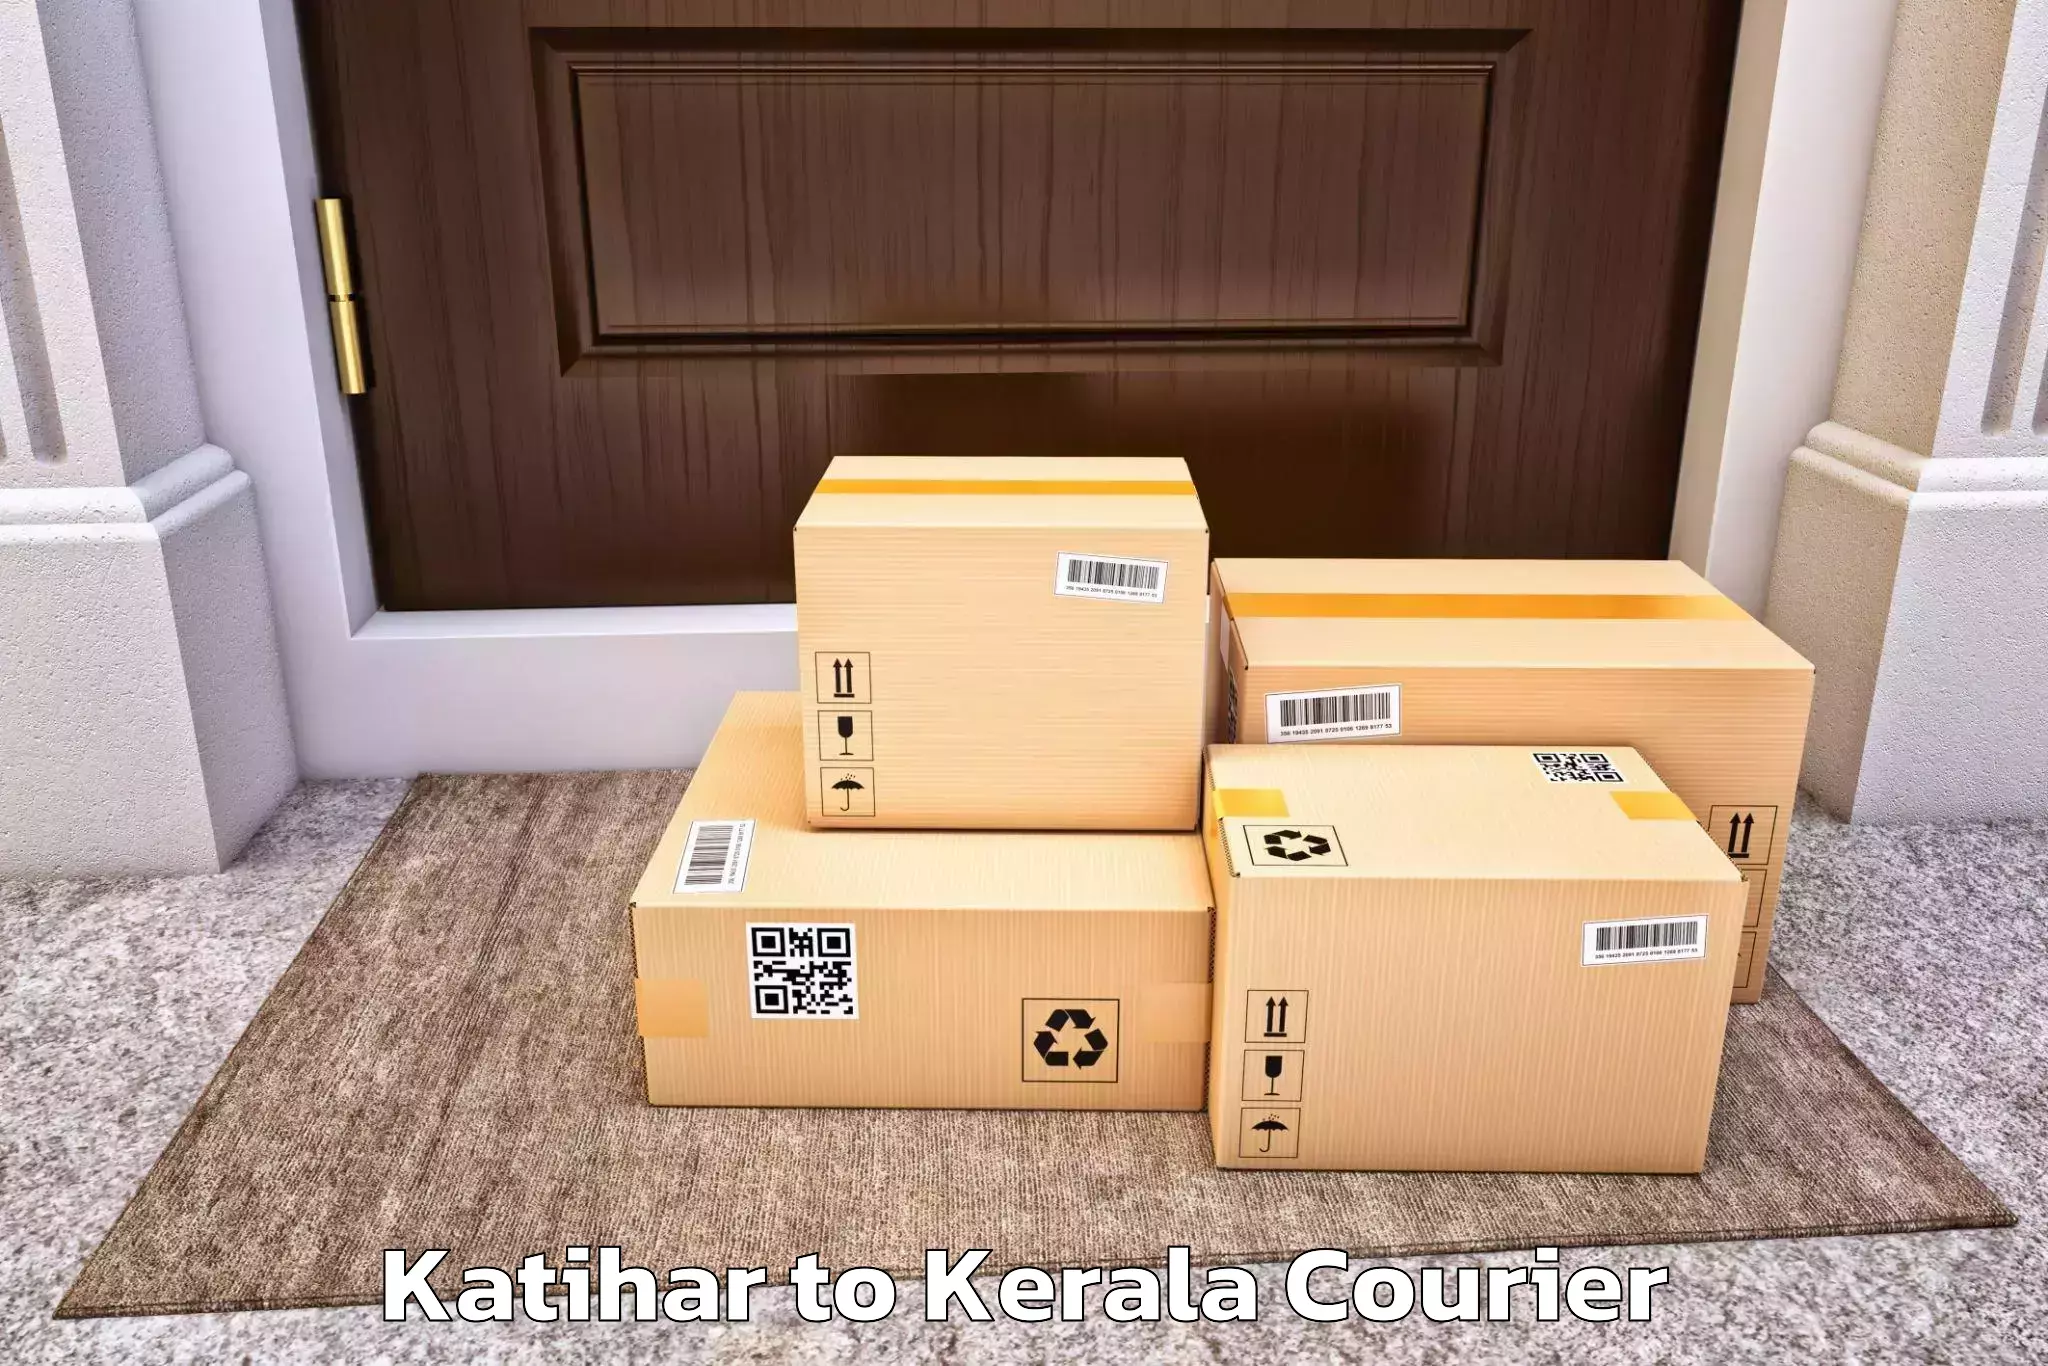 Furniture transport service Katihar to Kanhangad